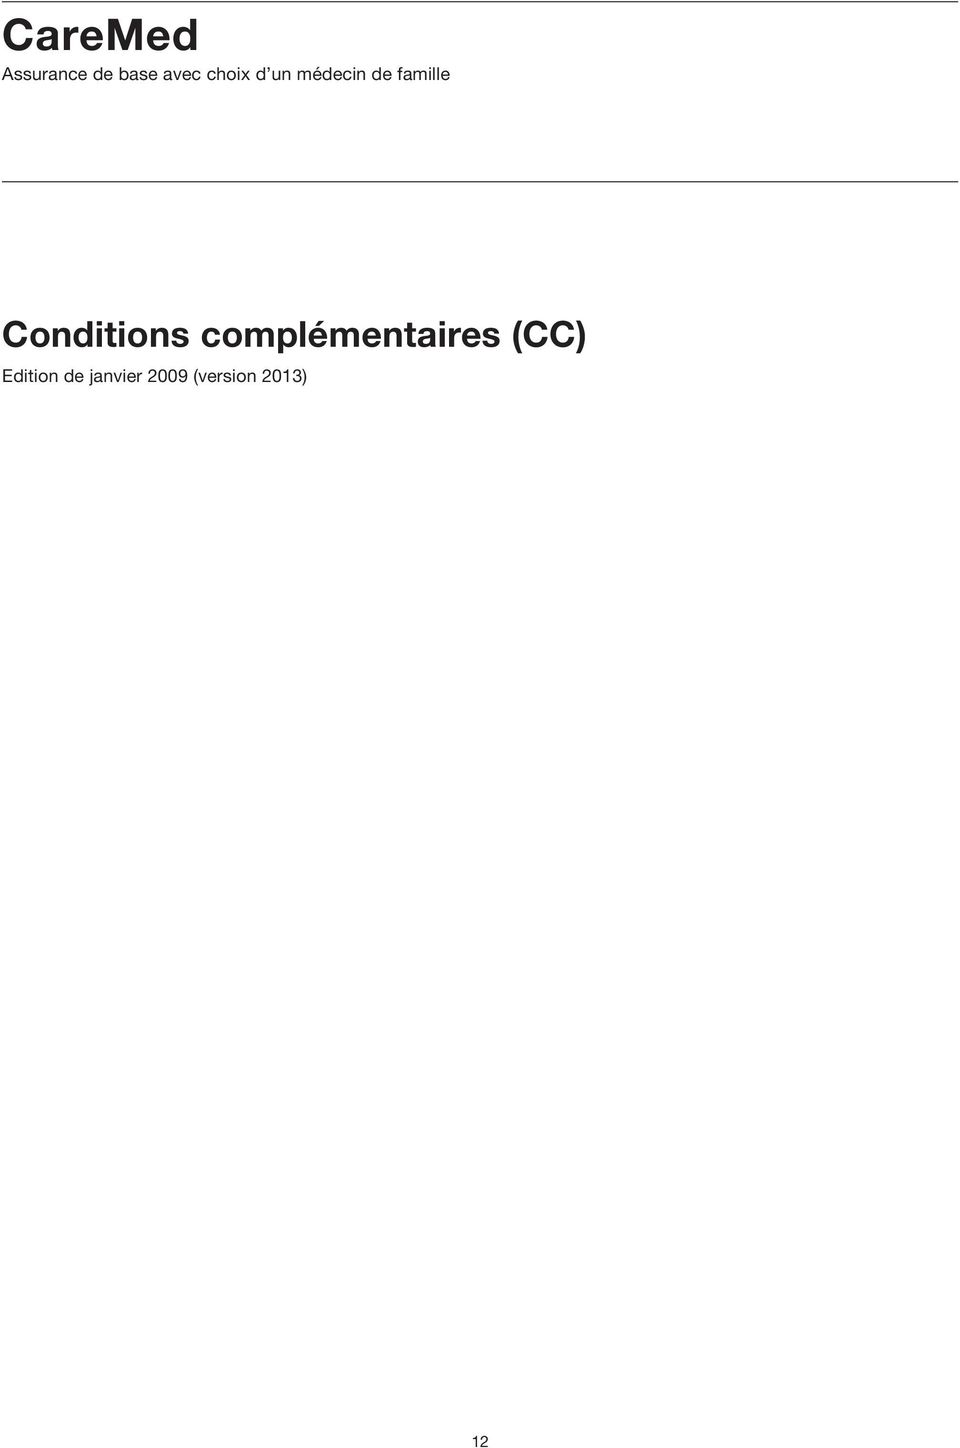 Conditions complémentaires (CC)